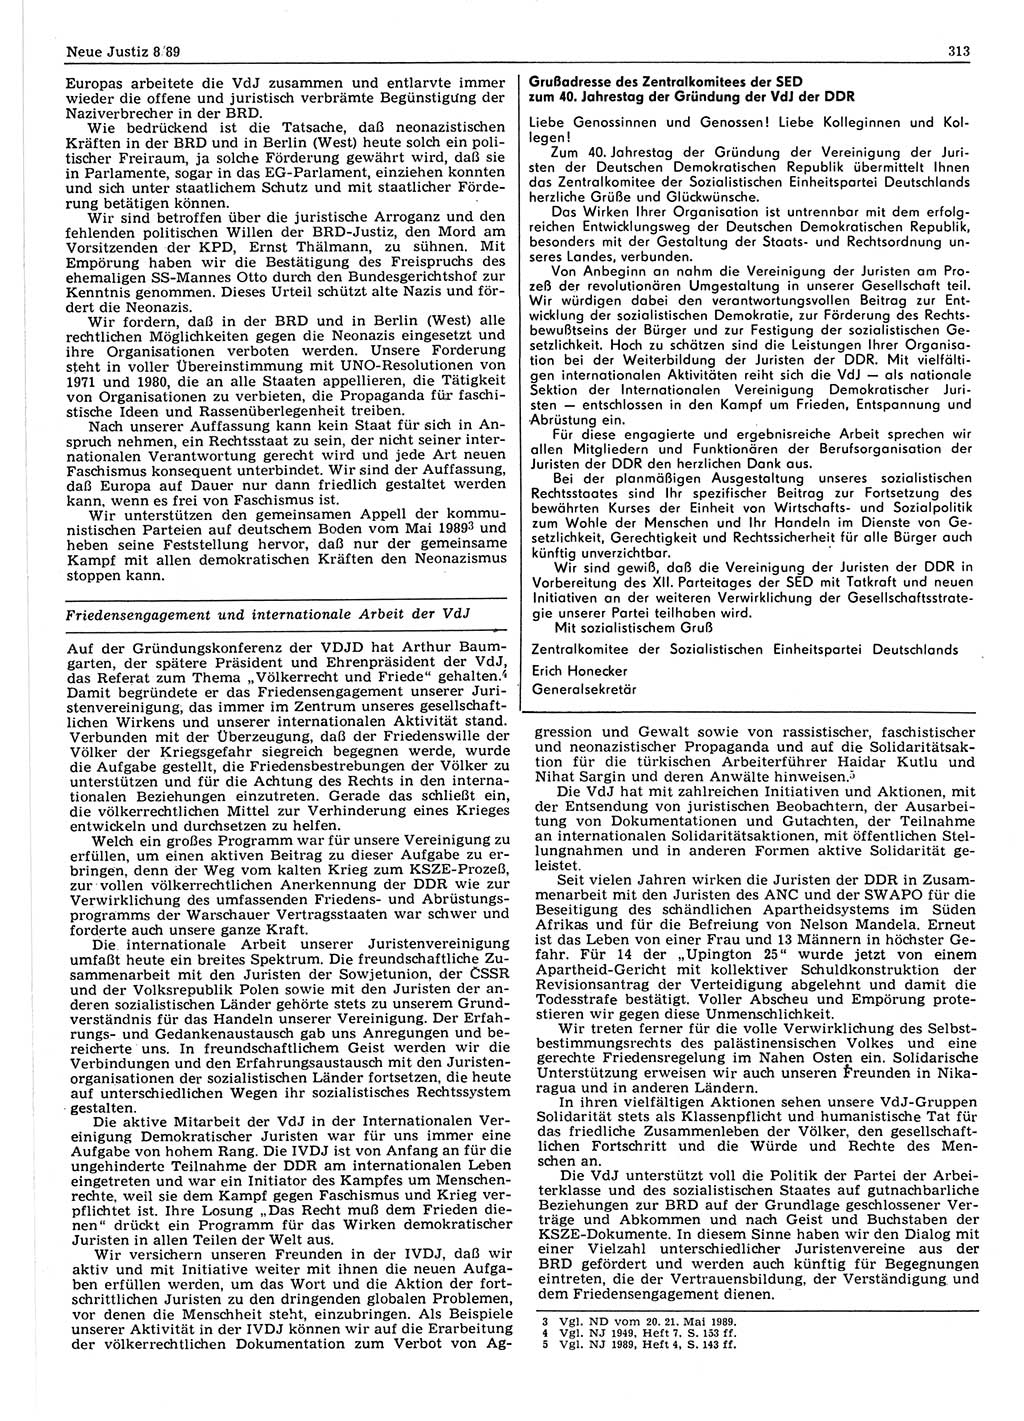 Neue Justiz (NJ), Zeitschrift für sozialistisches Recht und Gesetzlichkeit [Deutsche Demokratische Republik (DDR)], 43. Jahrgang 1989, Seite 313 (NJ DDR 1989, S. 313)